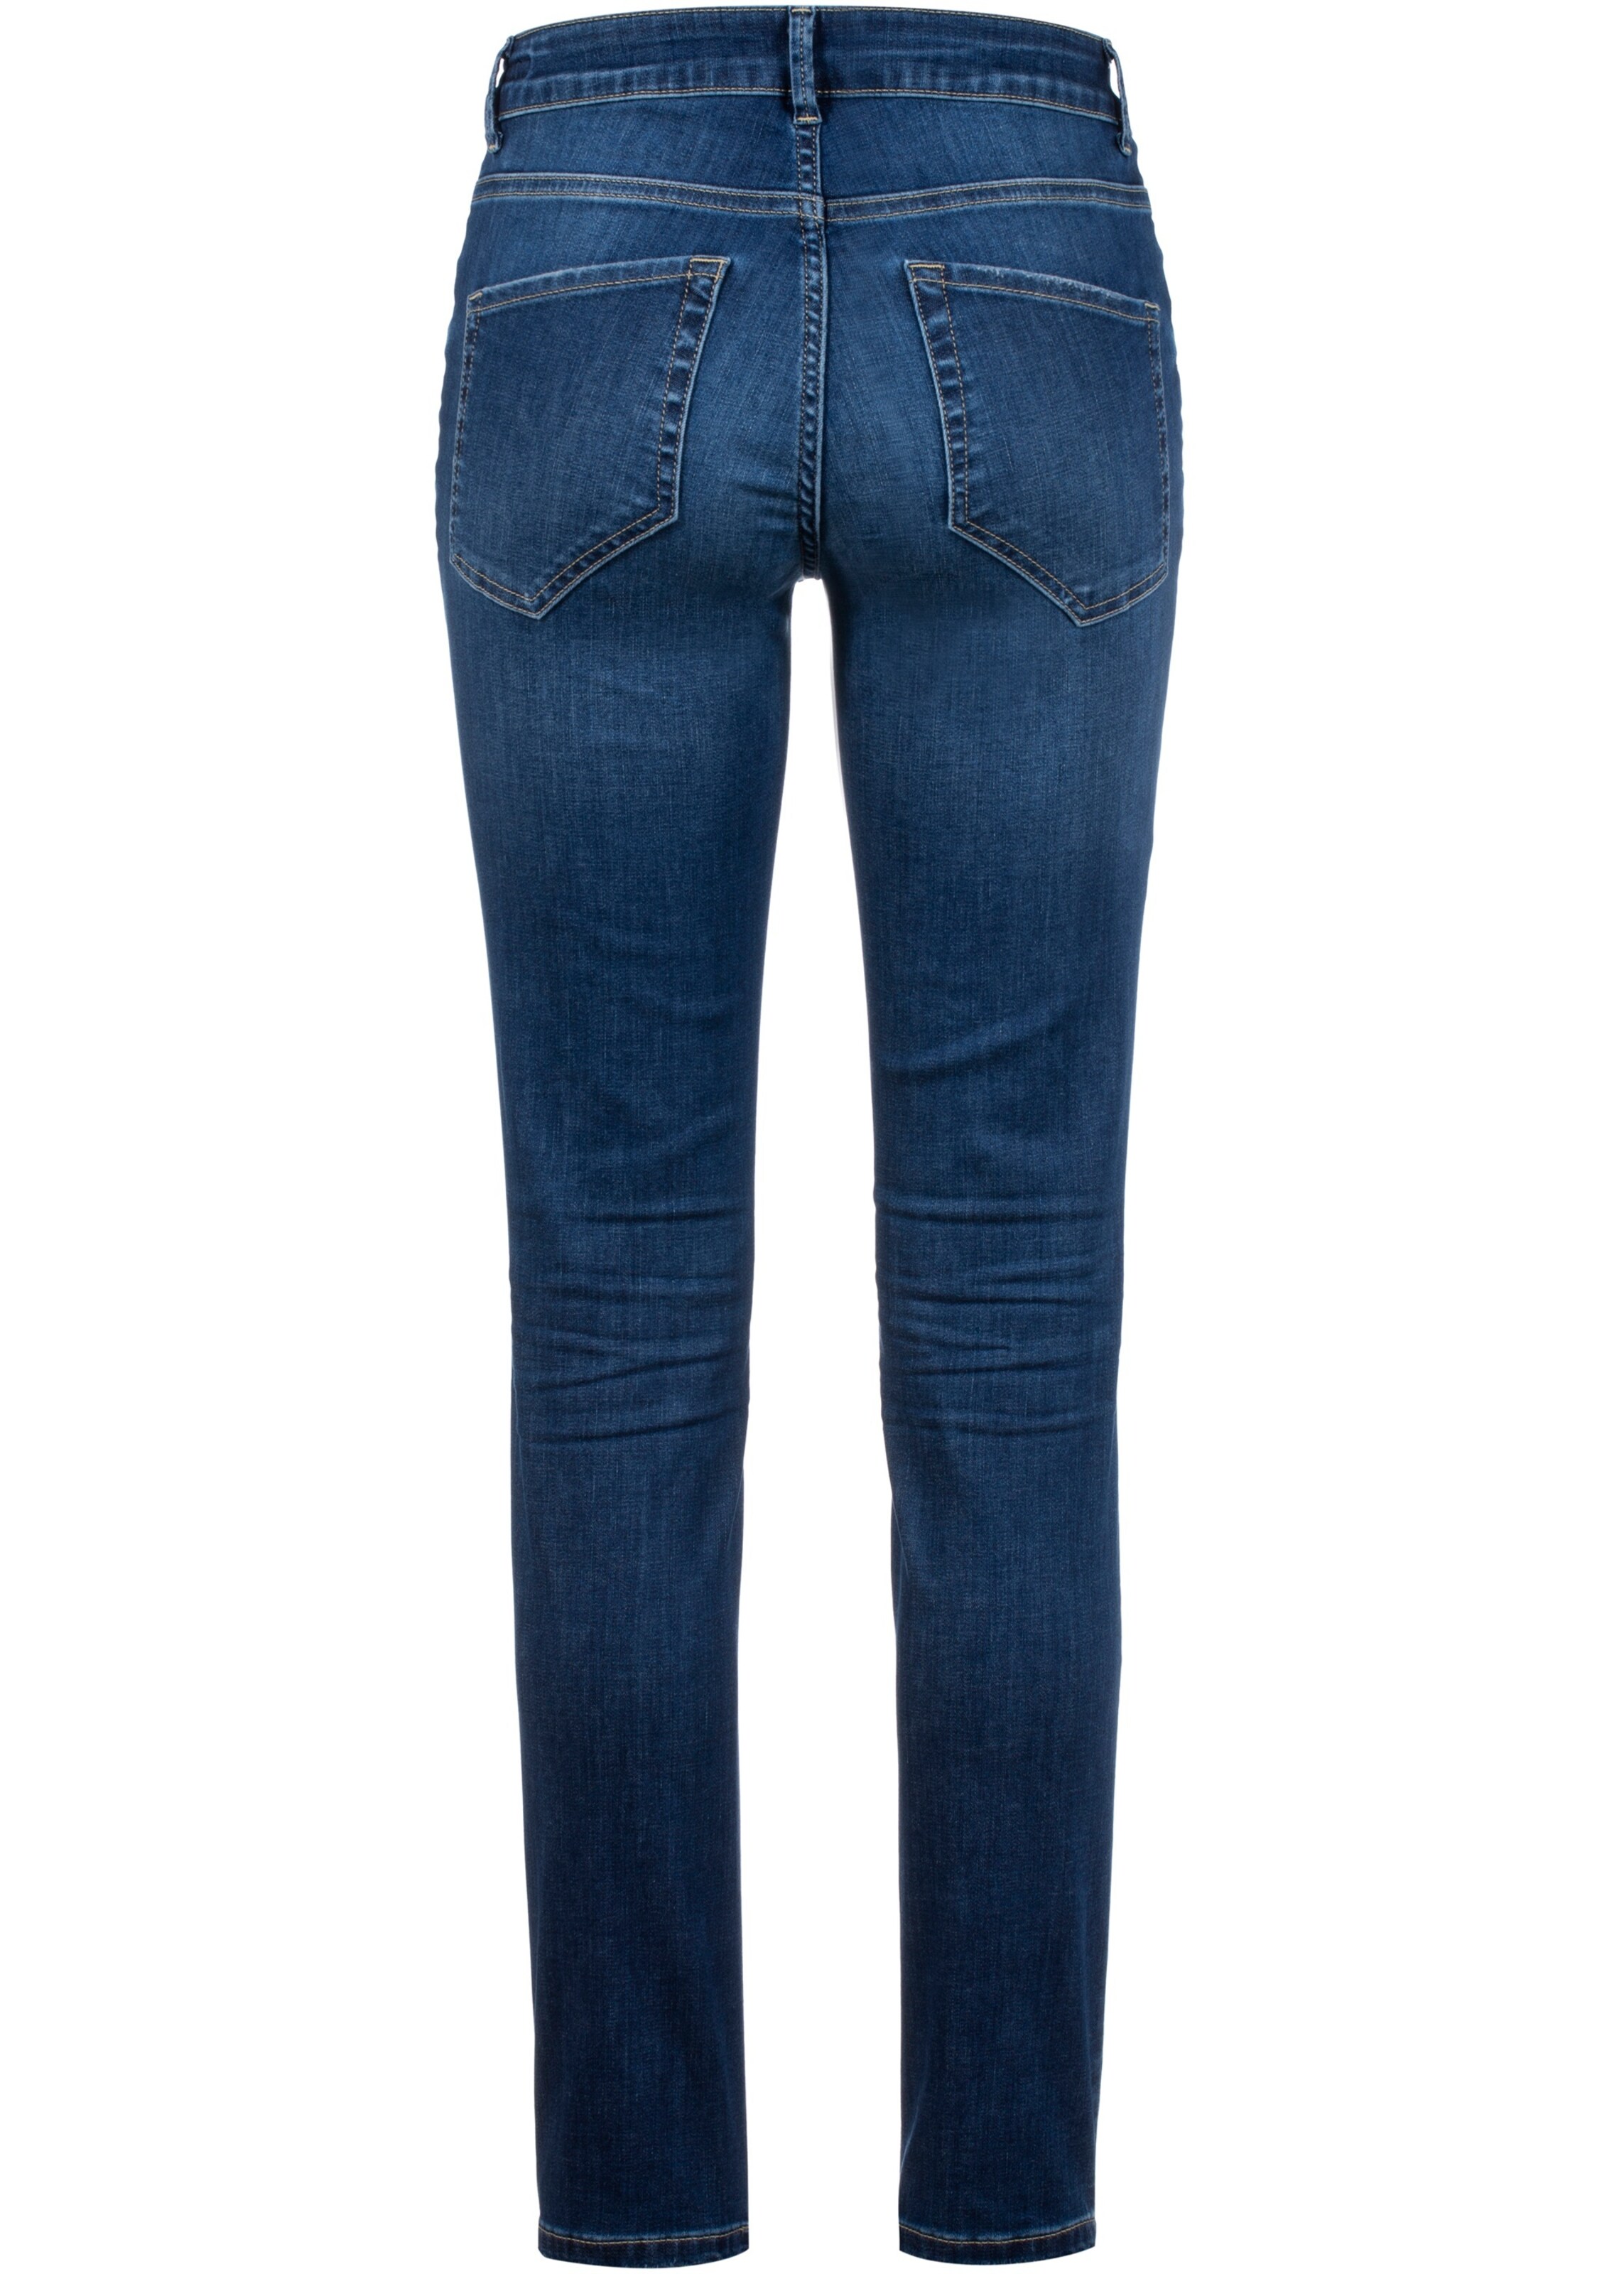 Frauen Jeans STEHMANN Jeans in Dunkelblau - PW21701